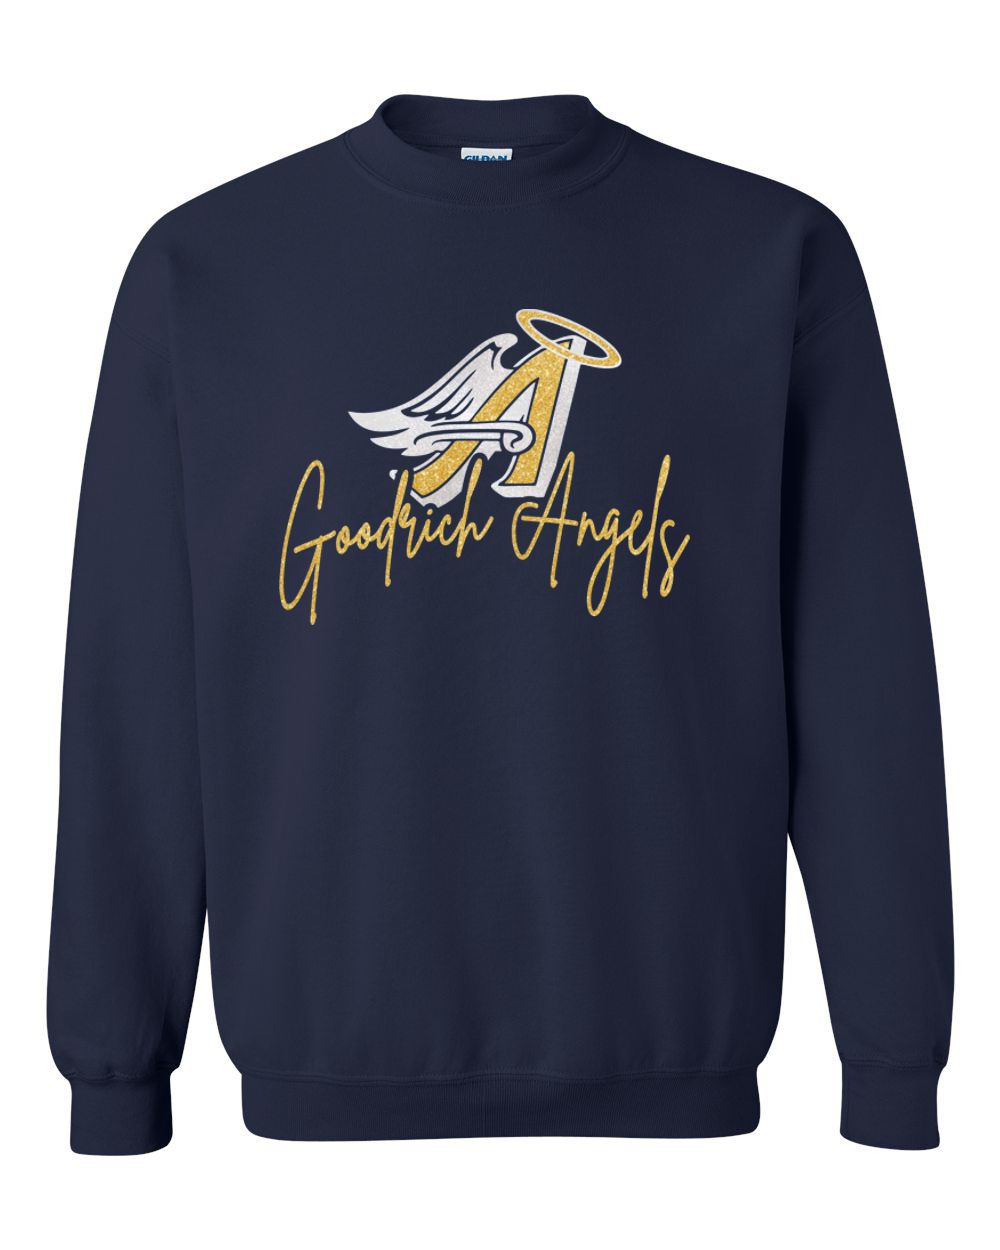 Goodrich Angels Glitter Basic Crew Sweatshirt